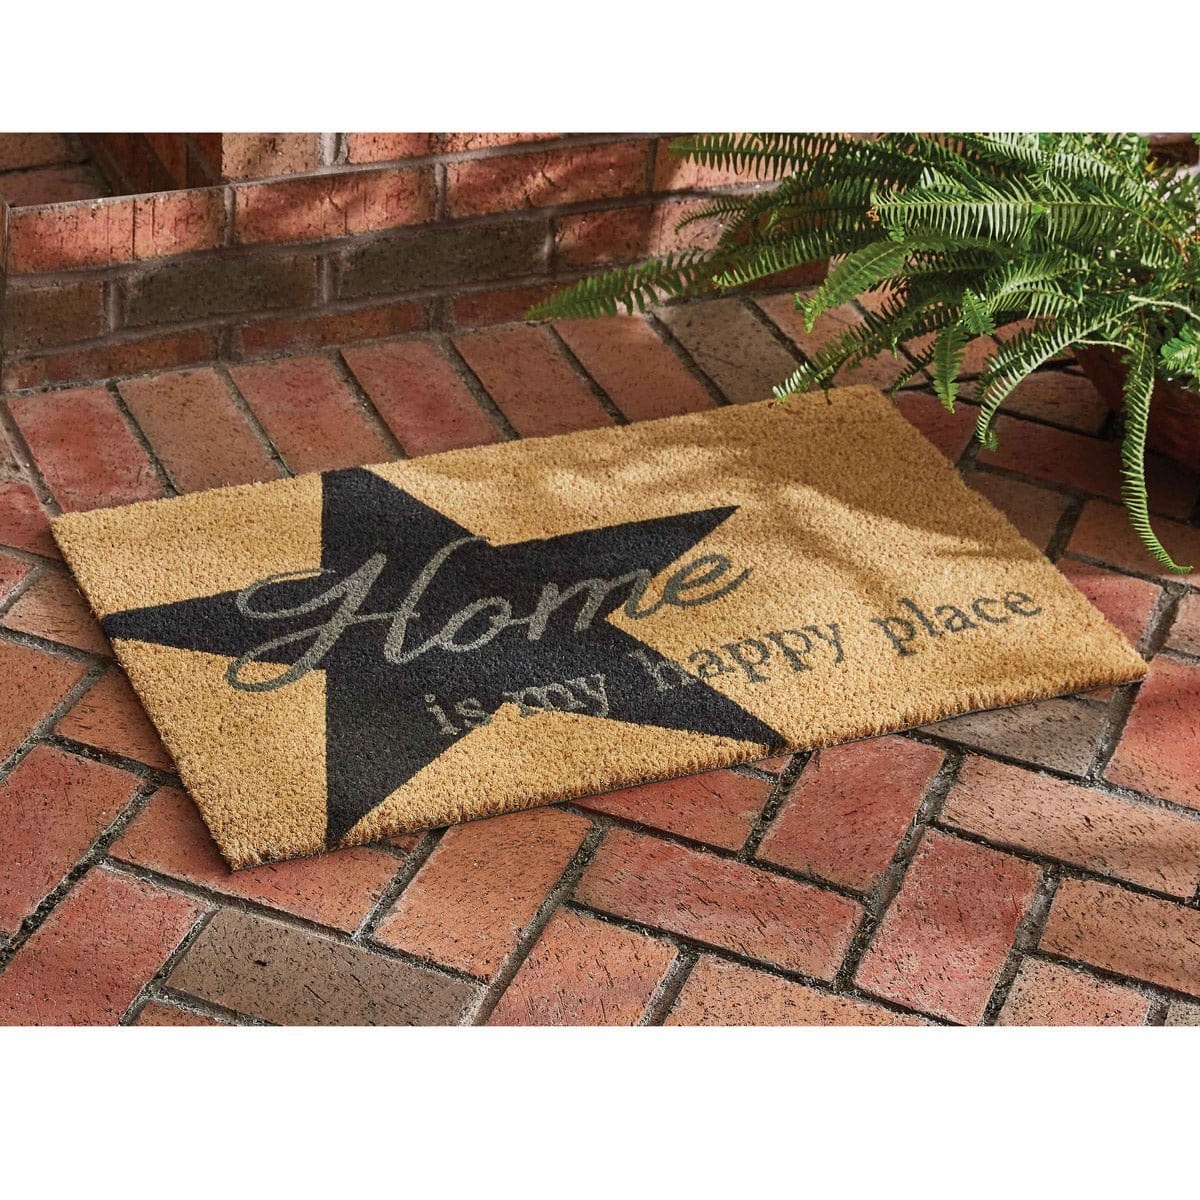 Coir Home Is My Happy Place Doormat-Park Designs-The Village Merchant